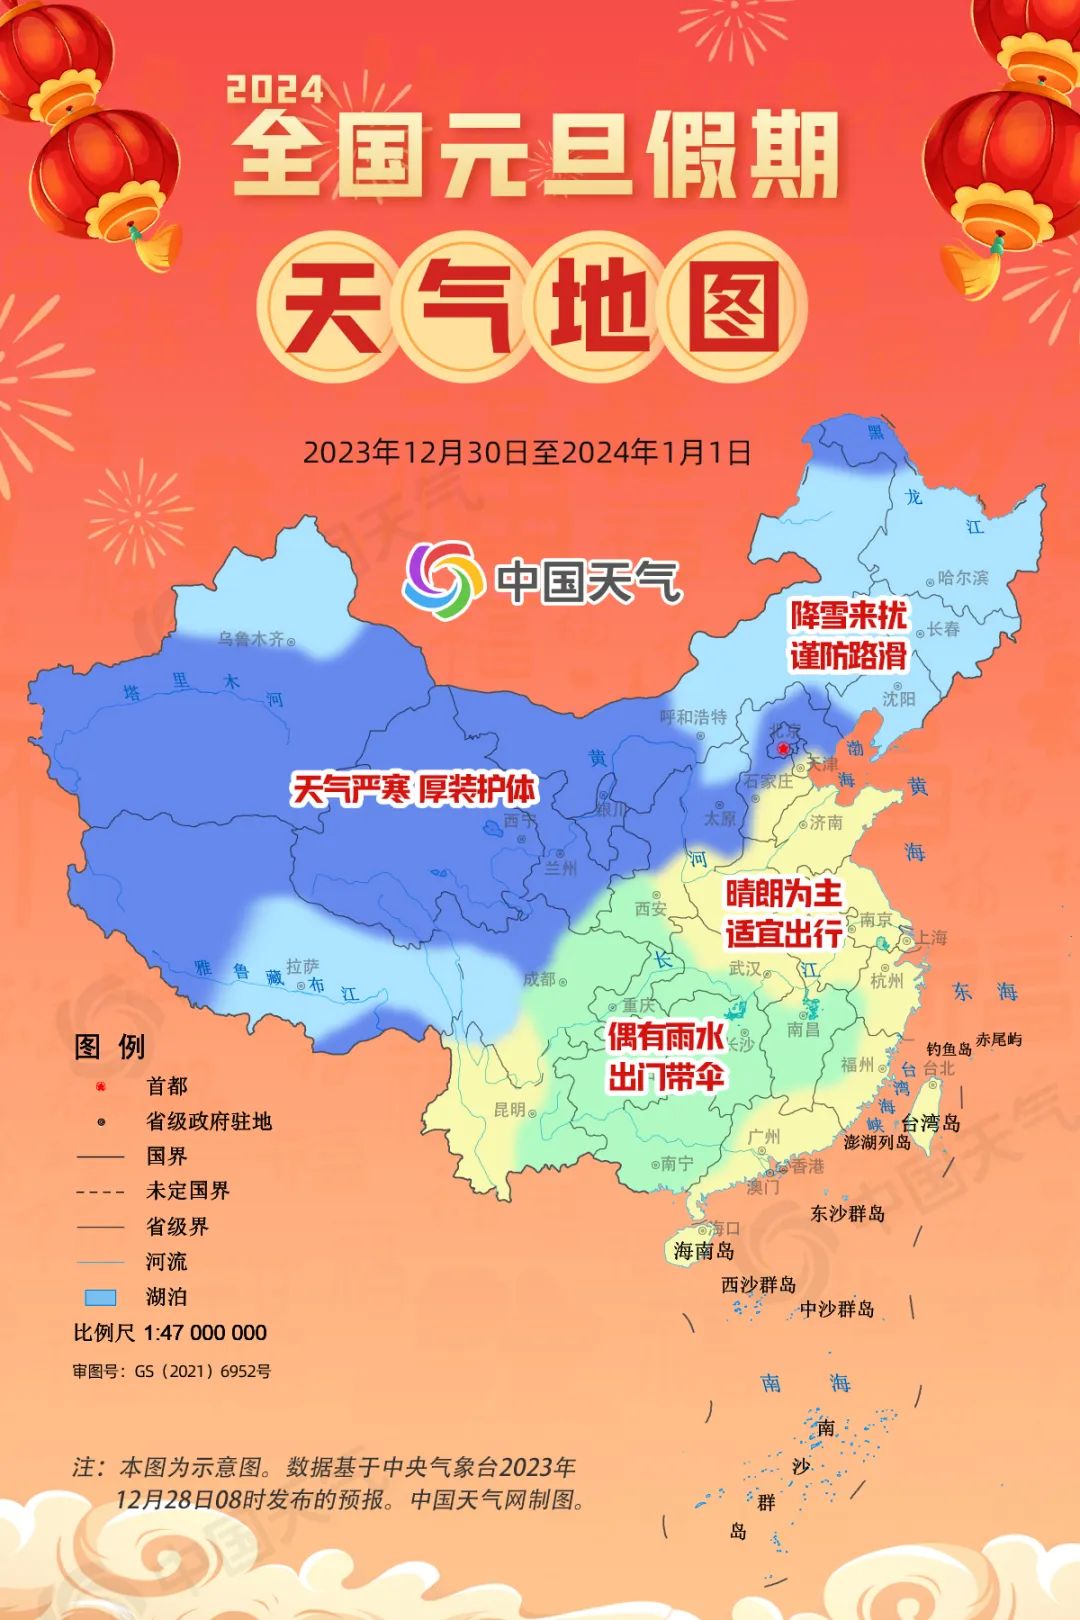 中国地图高清壁纸竖屏图片